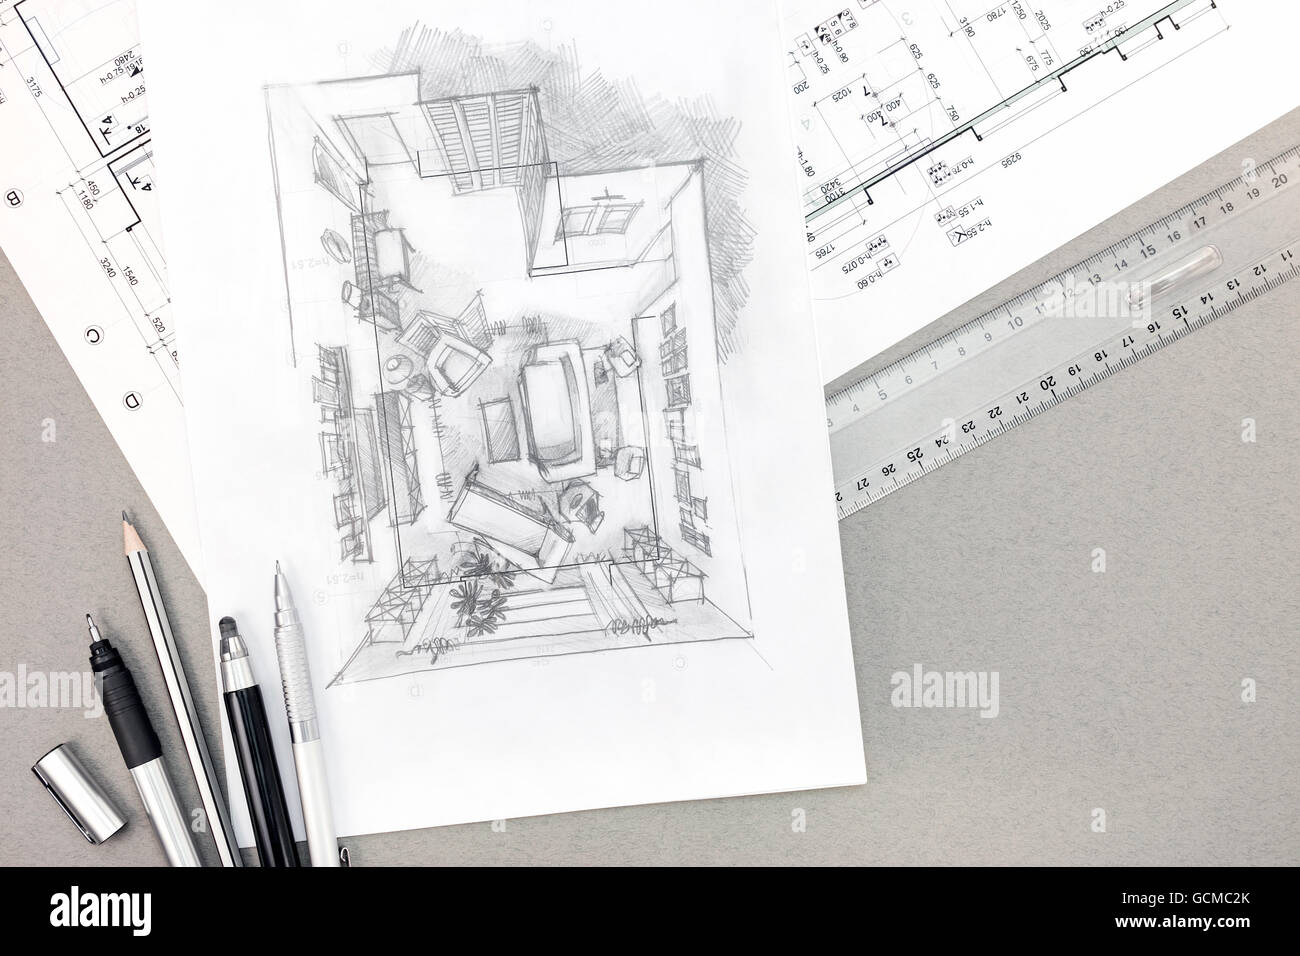 Schizzo architettonico con disegno tecnico e matite sulla scrivania, vista dall'alto Foto Stock